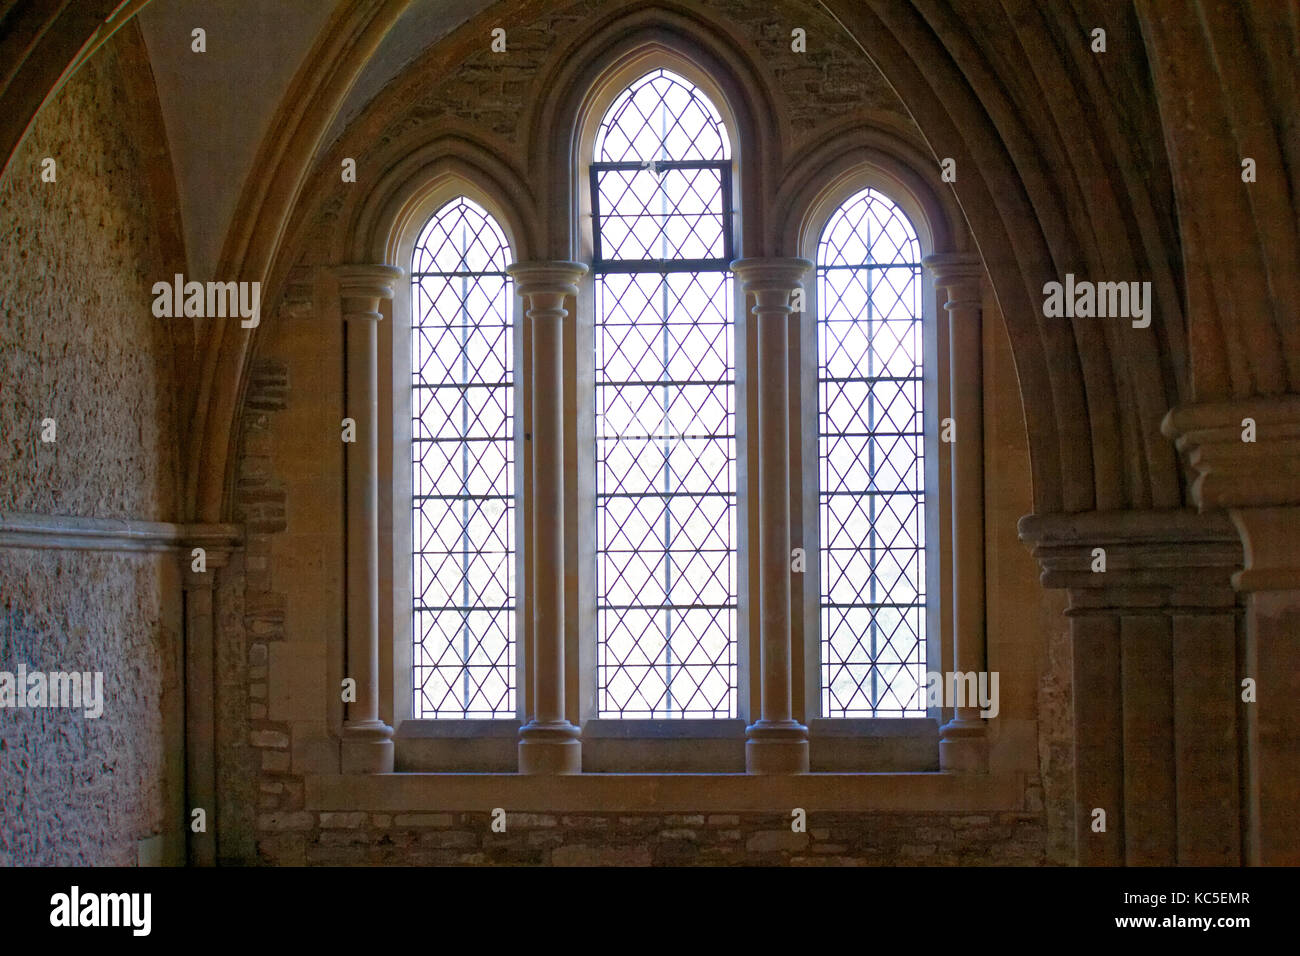 Lacock, Inghilterra - febbraio 2, 2016: Lacock Abbey dedicato a Santa Maria e san Bernardo, è stata fondata nel 1229. Questa è stata usata nel film di Harry Potter. Foto Stock